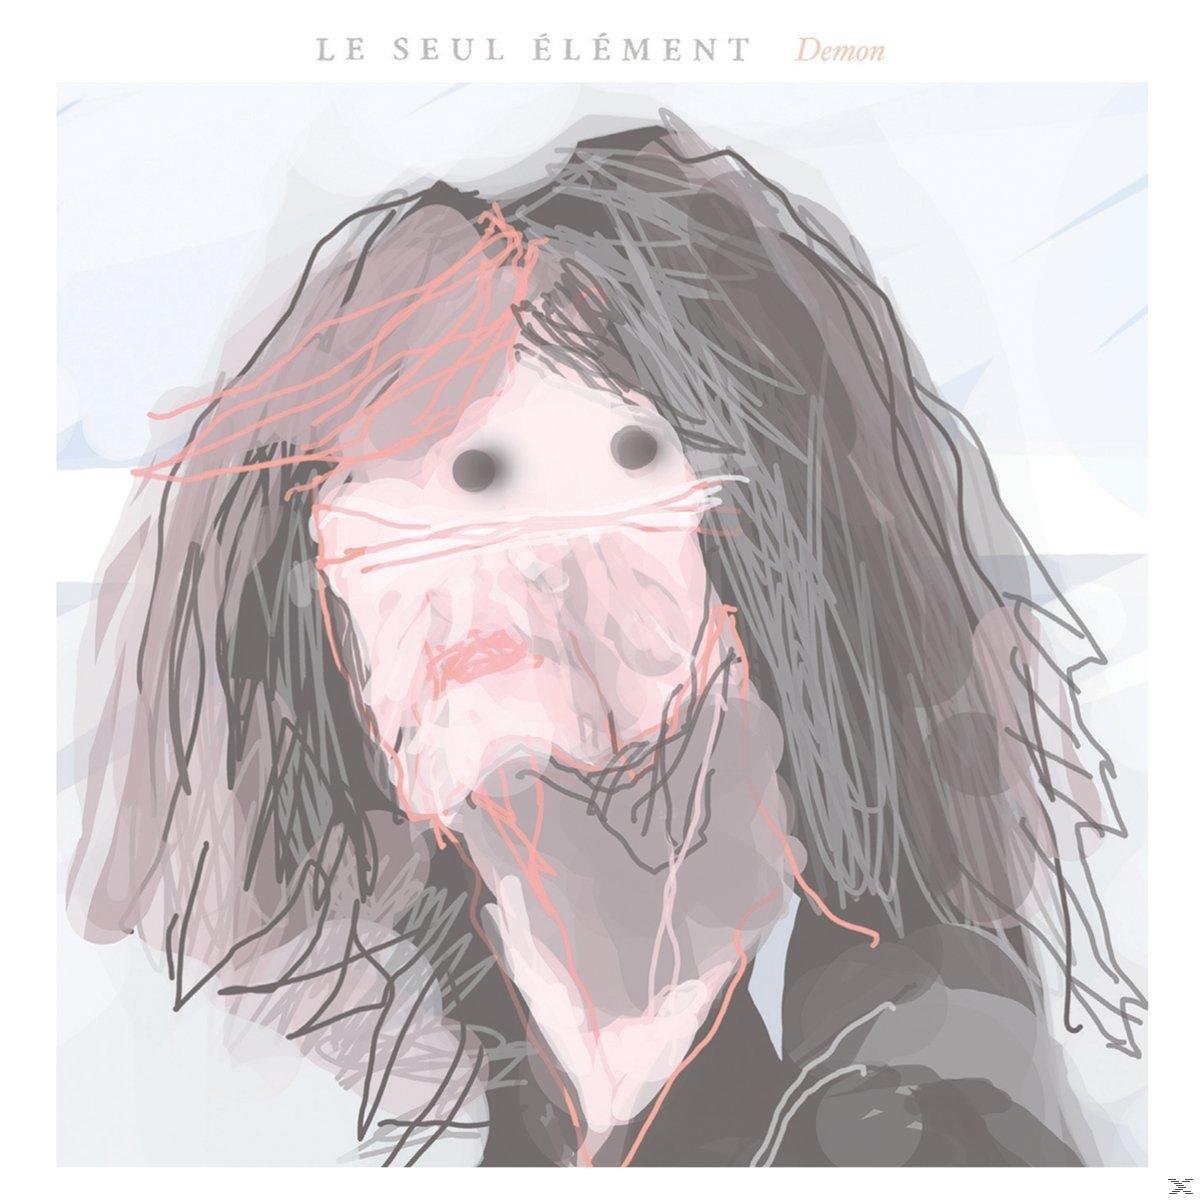 Demon Seul Element - - Le (CD)